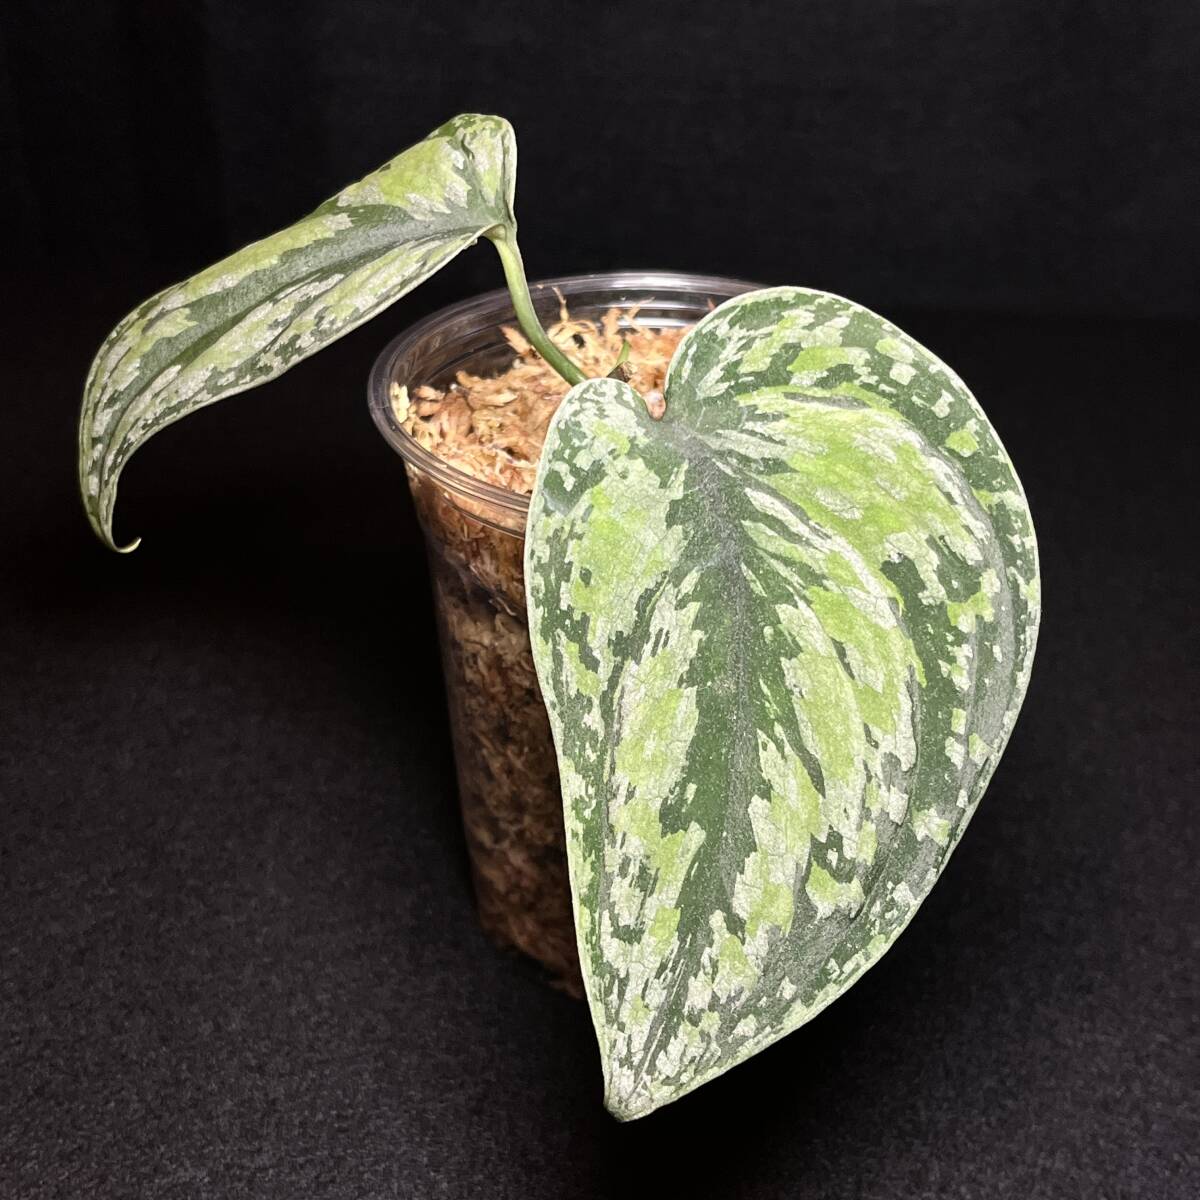 『希少』104. Scindapsus tricolor スキンダプサス トリカラー インドネシア輸入株 熱帯植物 希少種_画像1